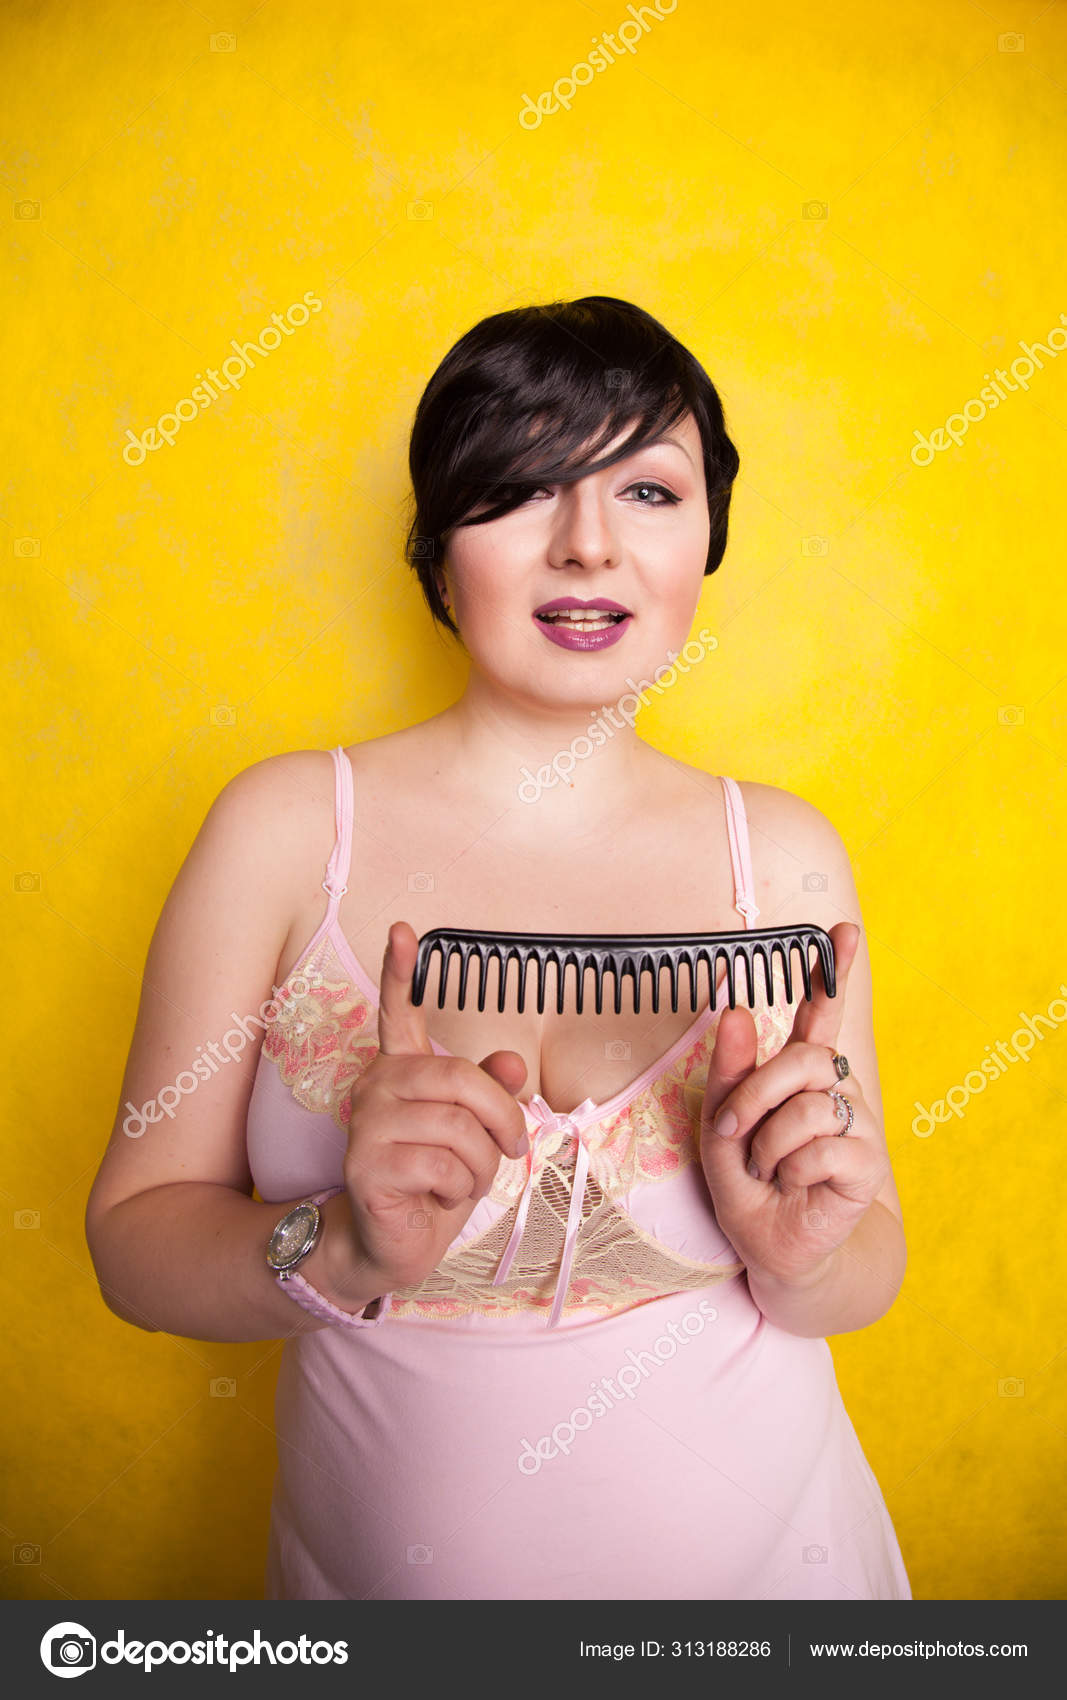 Secador de cabelo preto na mão de uma mulher em um fundo amarelo